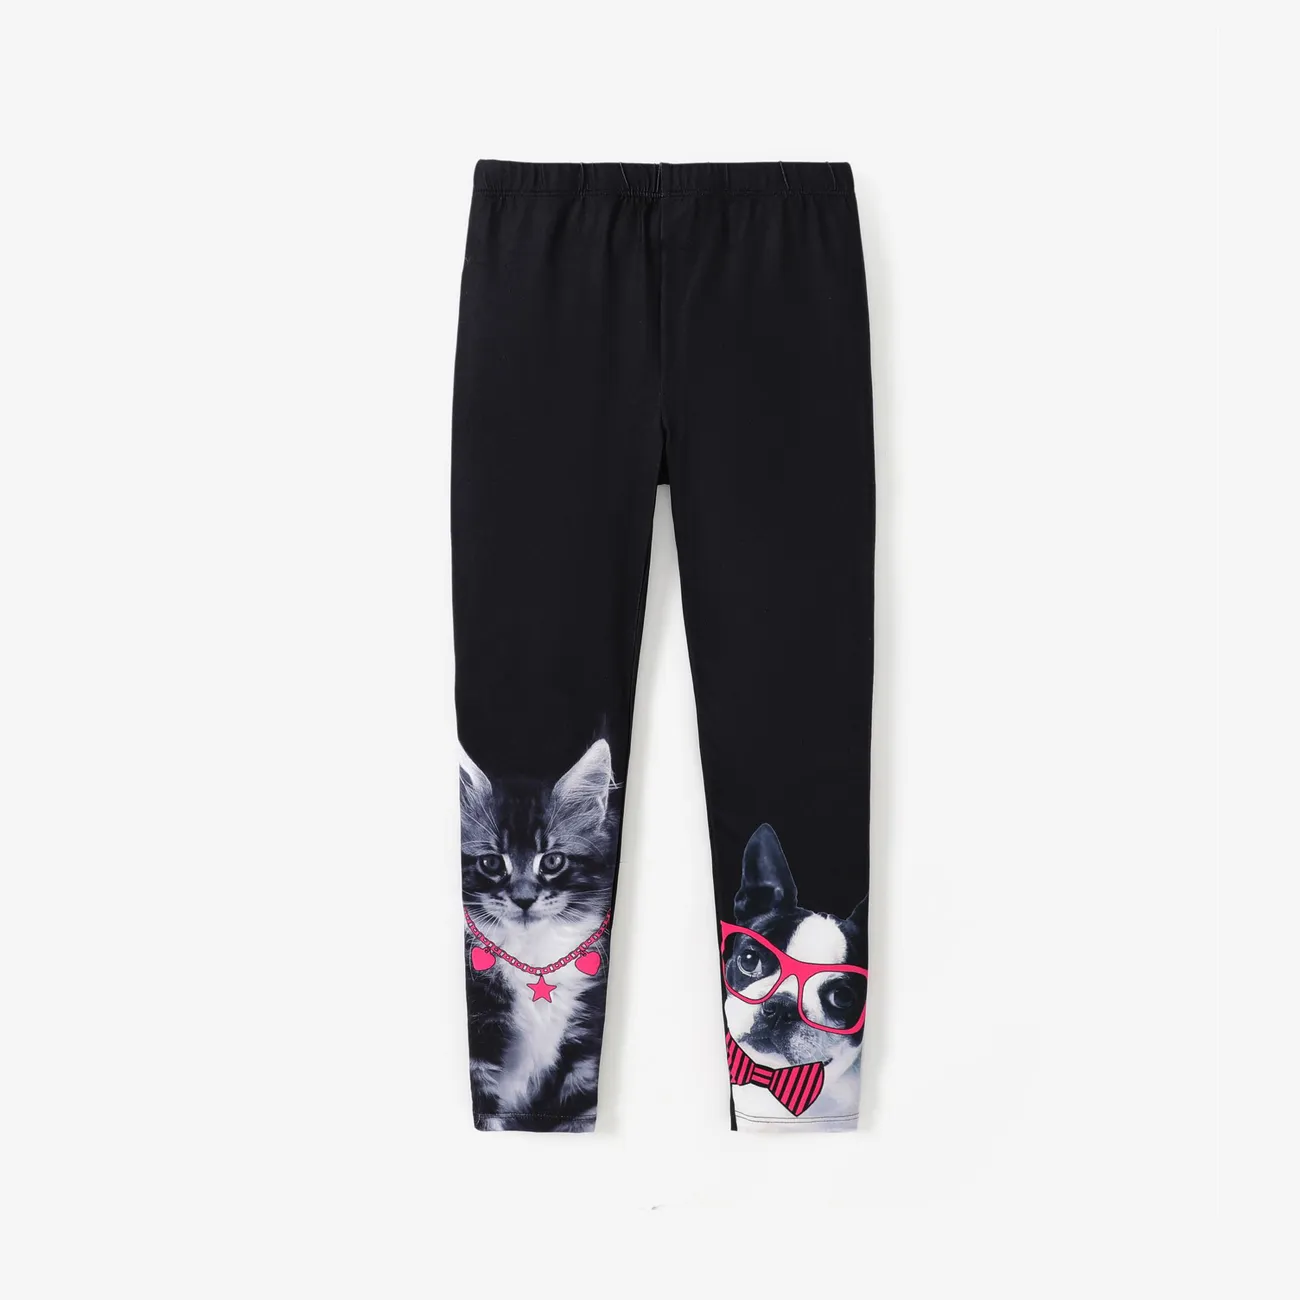 Kid Girl Cat Dog Print Leggings Apenas R$ 43,90 PatPat BR Móvel